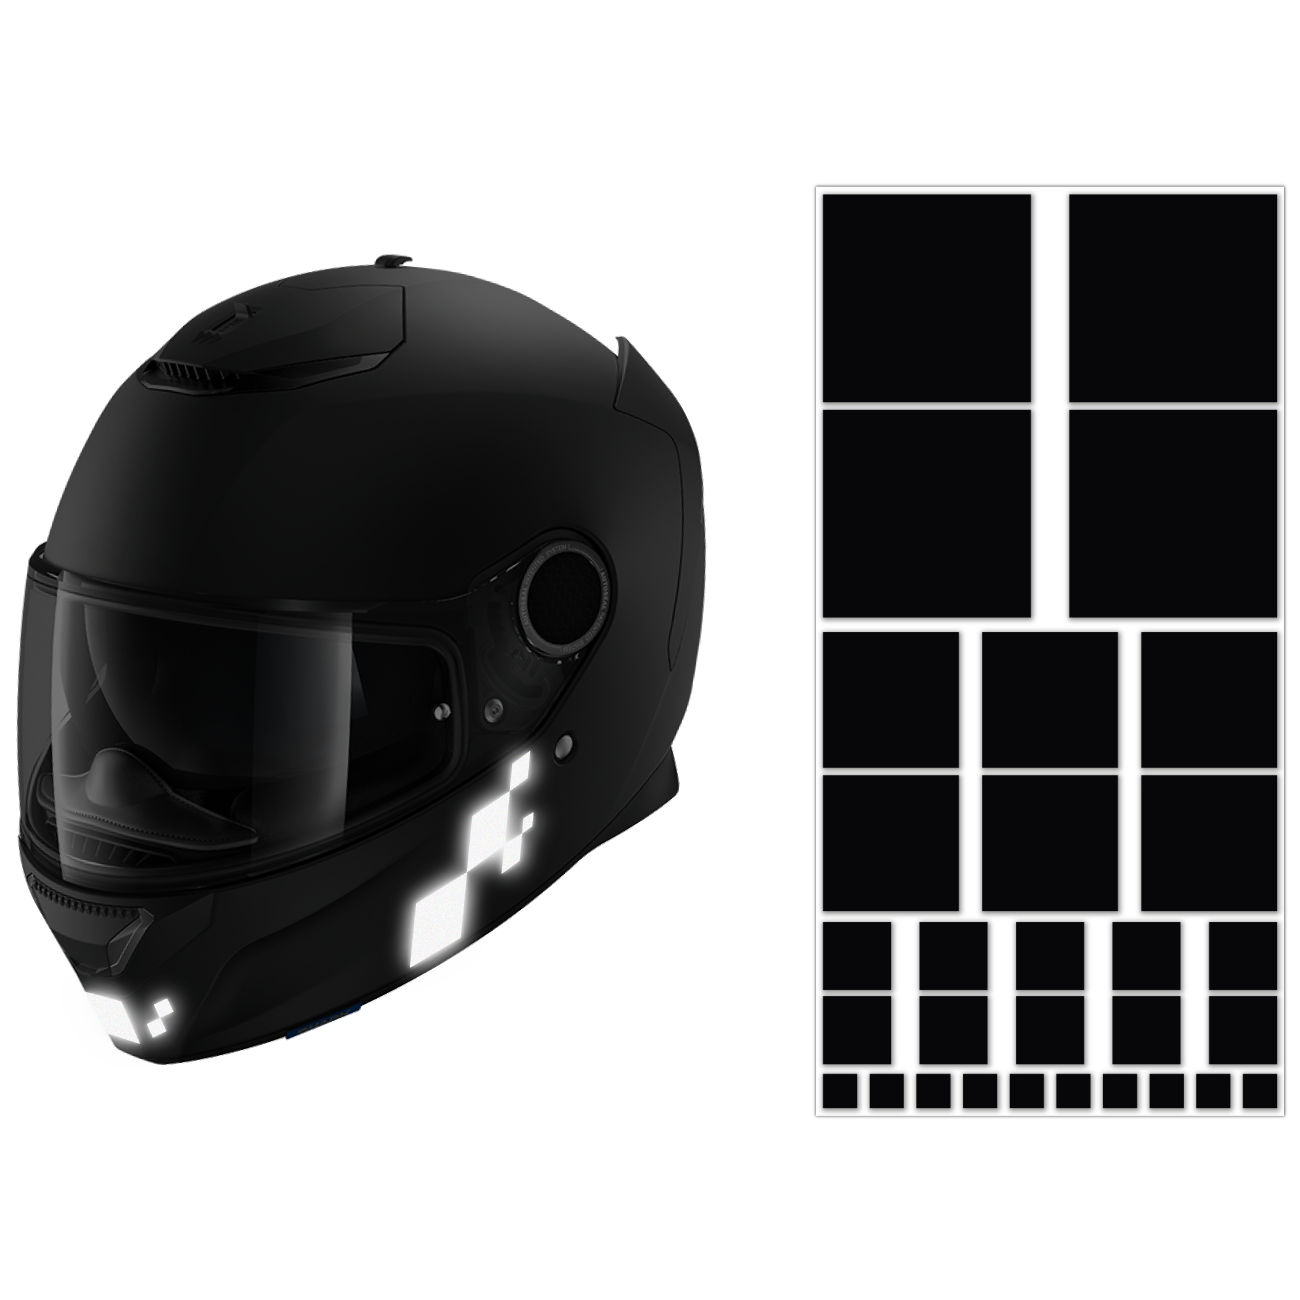 Retro reflechissant 3M™ homologué sticker casque moto